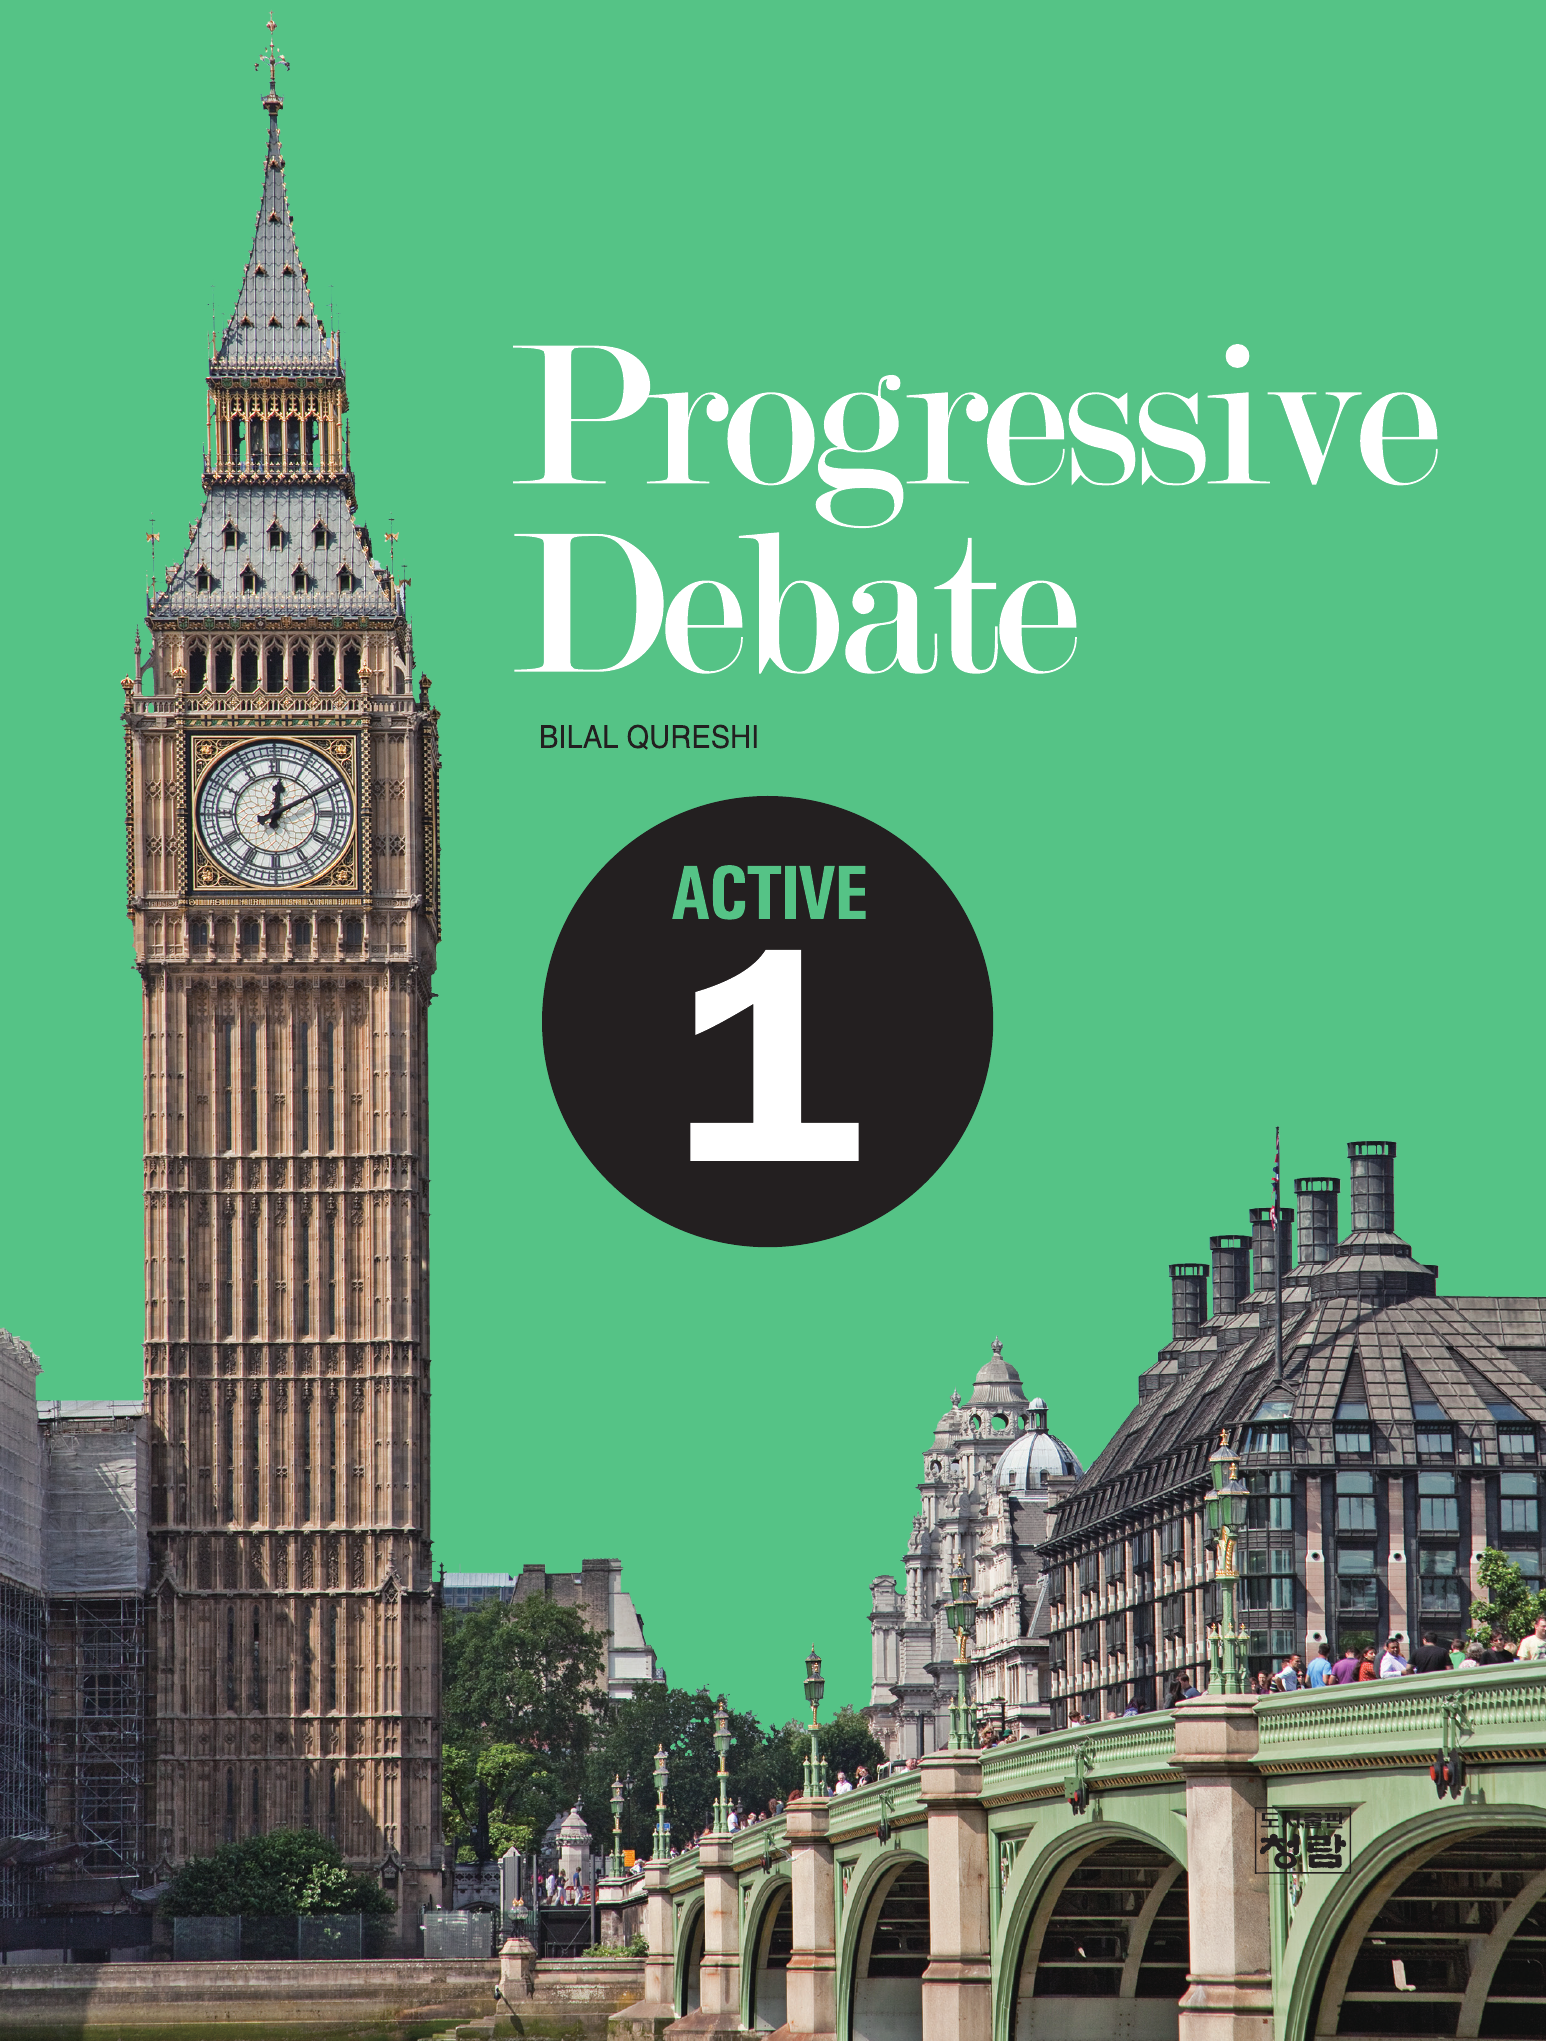 Progressive Debate Active 1